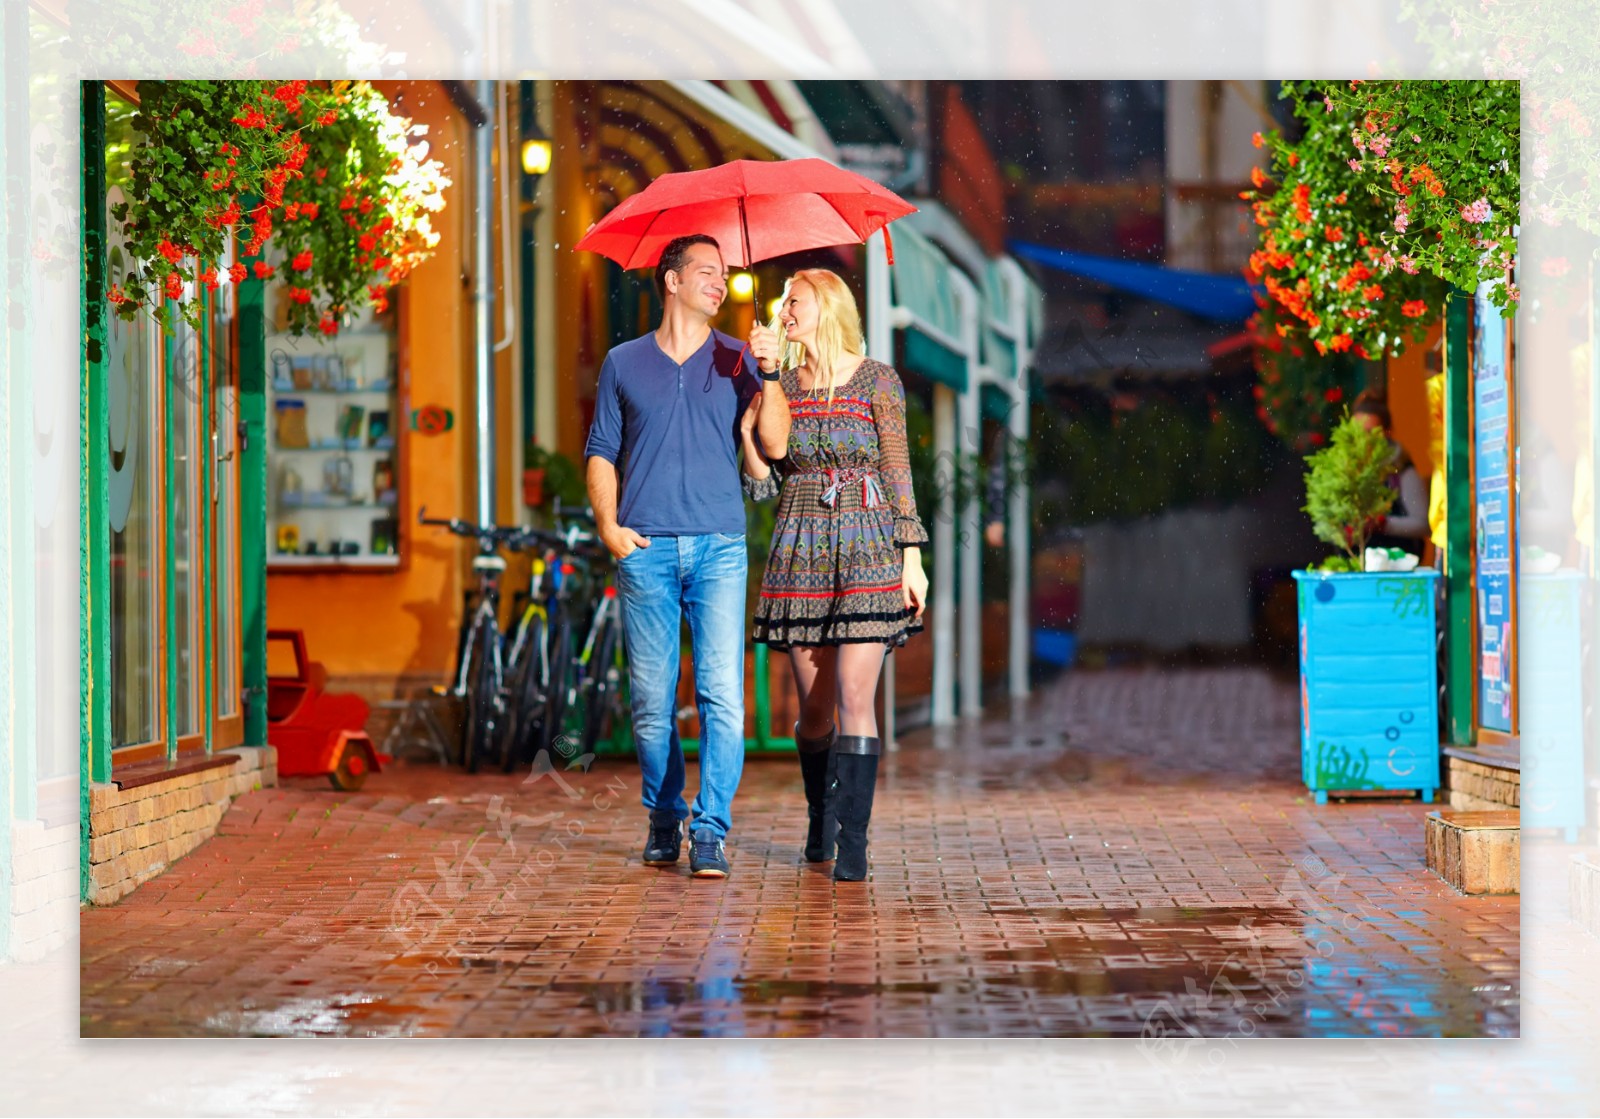 打着雨伞走路的夫妻图片